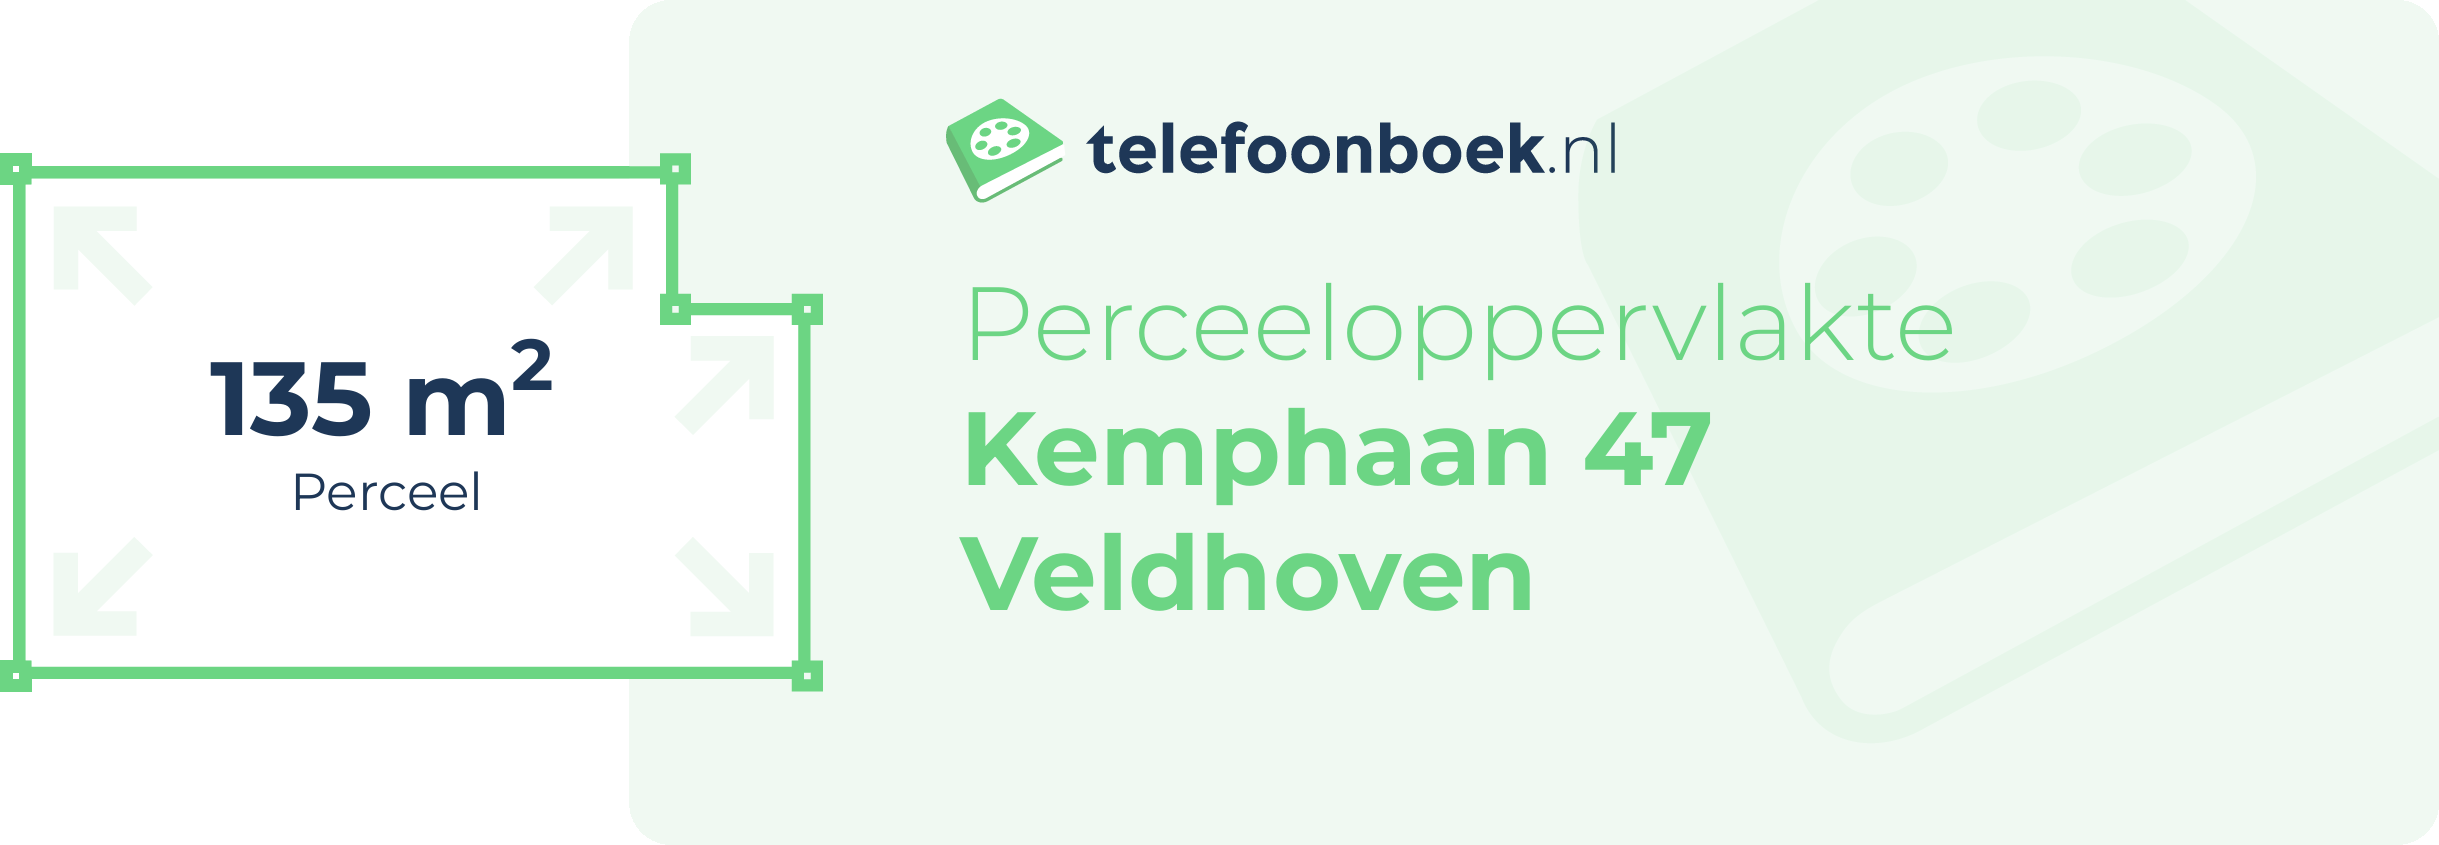 Perceeloppervlakte Kemphaan 47 Veldhoven